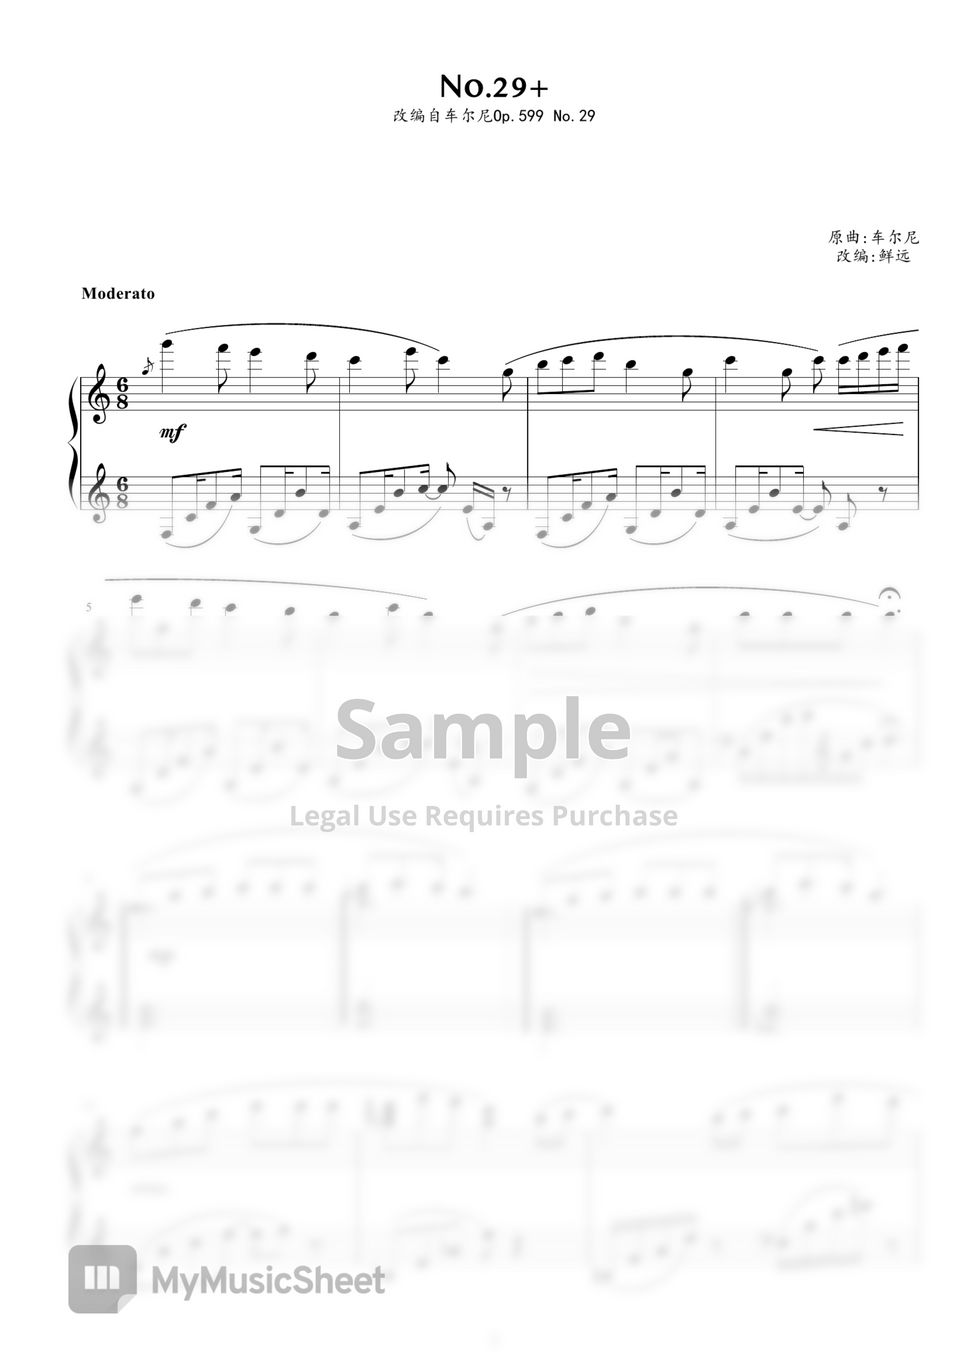 Czerny Carl - No.29+, originally Op.599 no.29 by Czerny Carl